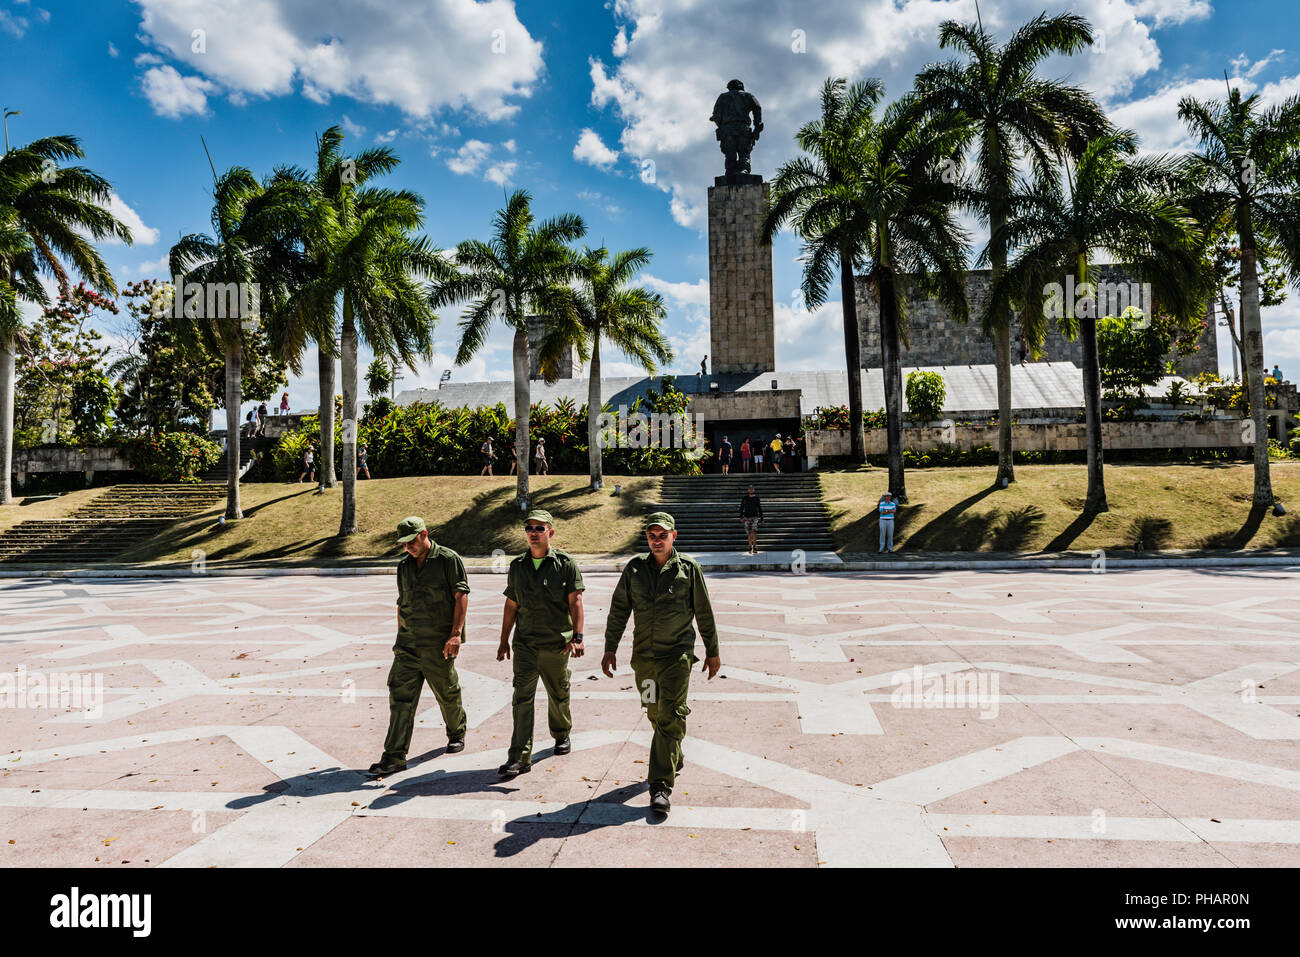 Santa Clara, Cuba / 16 mars 2016 : trois soldats cubains en vert fatigues crossing plaza au mausolée de Che Guevara. Banque D'Images